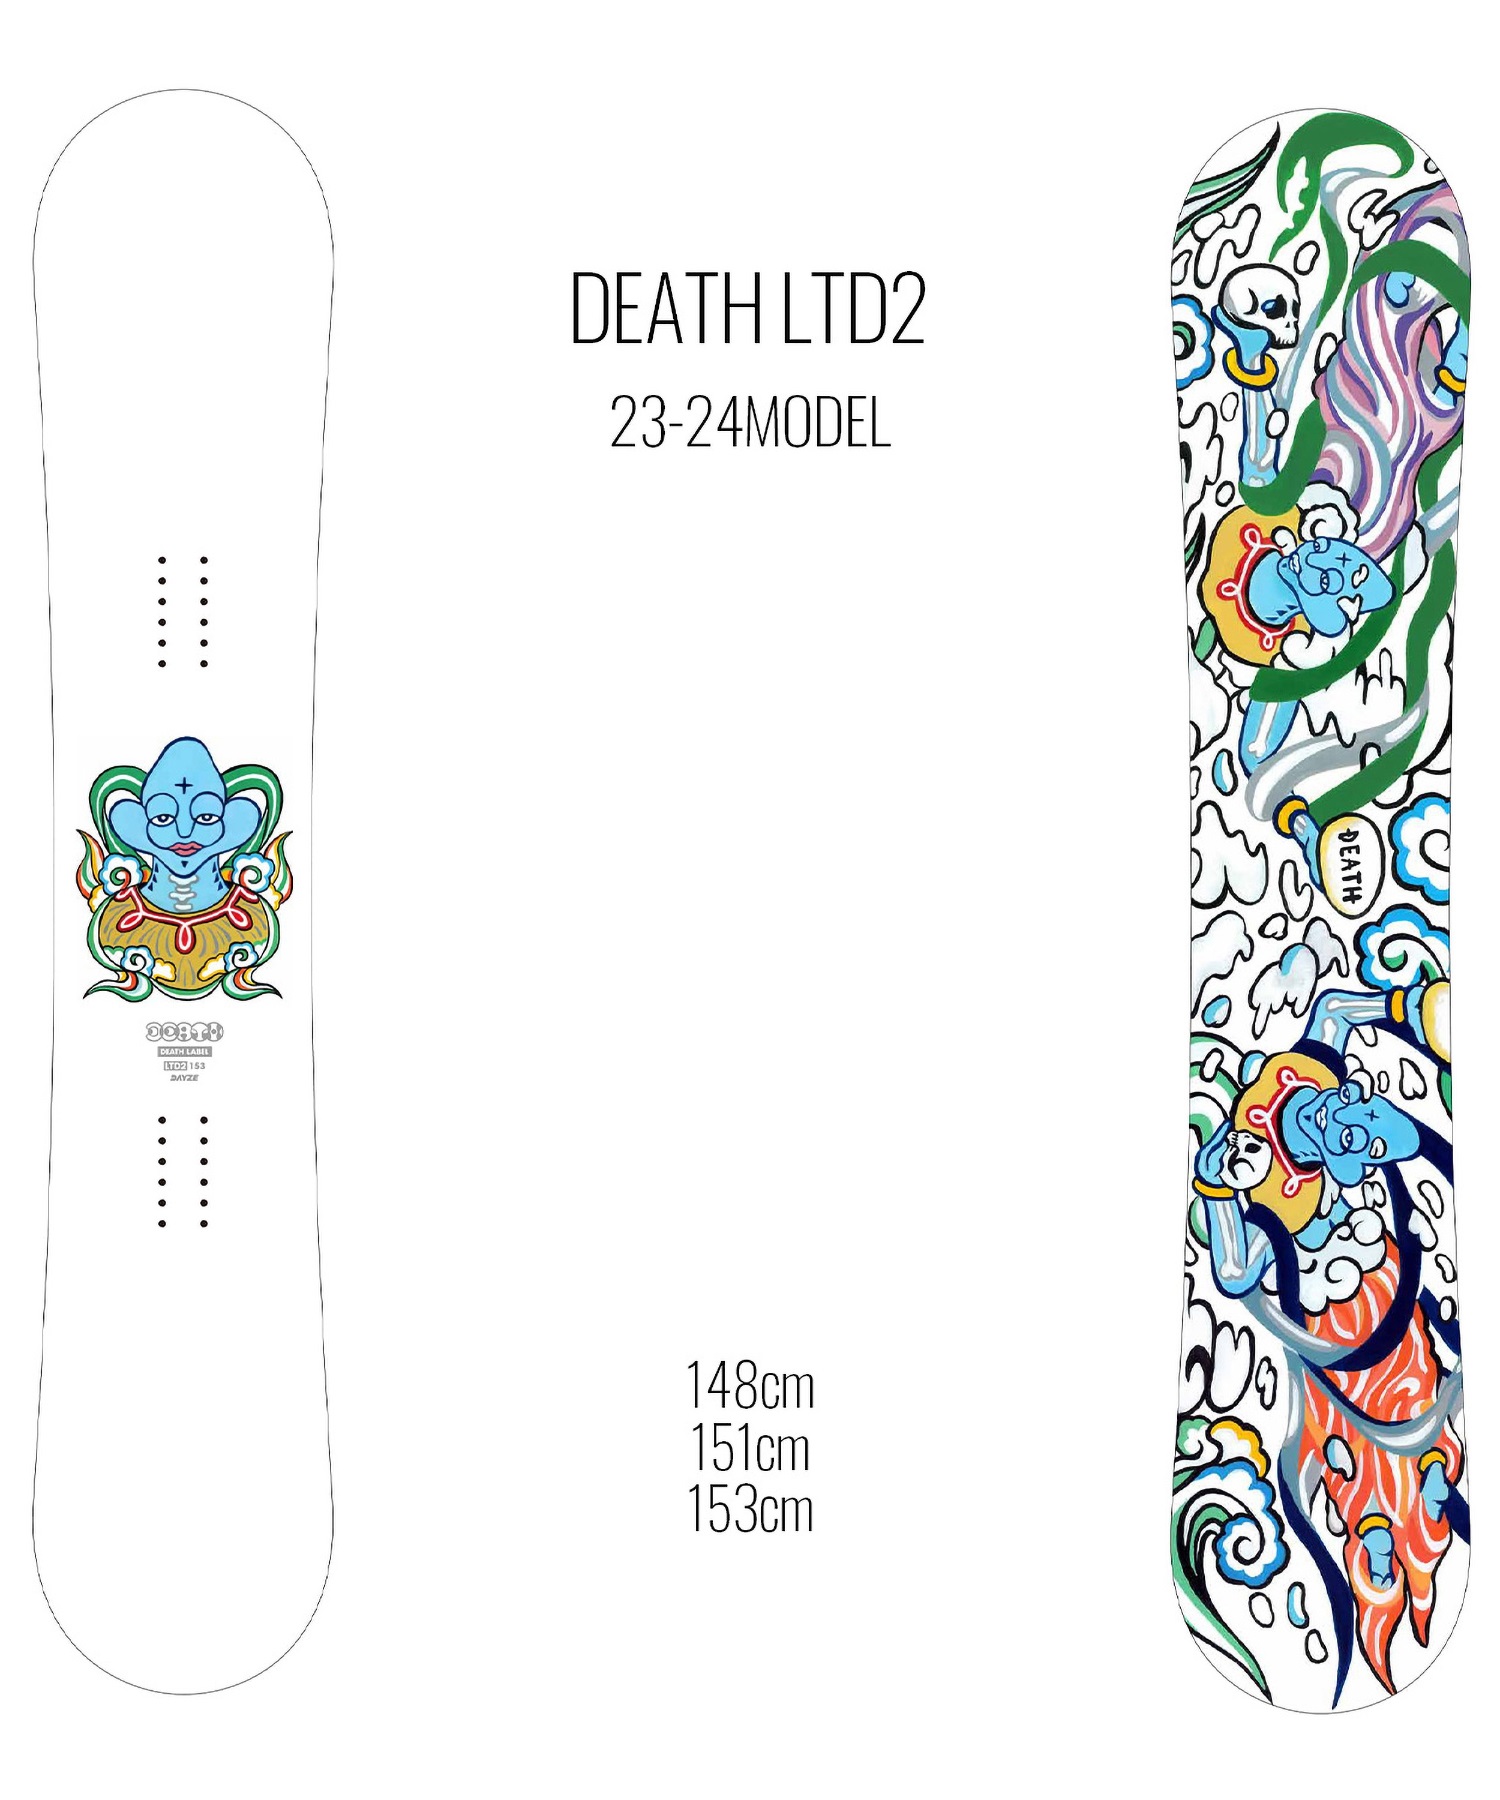 【早期購入/店頭受取対象外】スノーボード 板 メンズ DEATH LABEL デスレーベル DEATH LTD2 23-24モデル ムラサキスポーツ KK C2(DEATHLTD2-148cm)